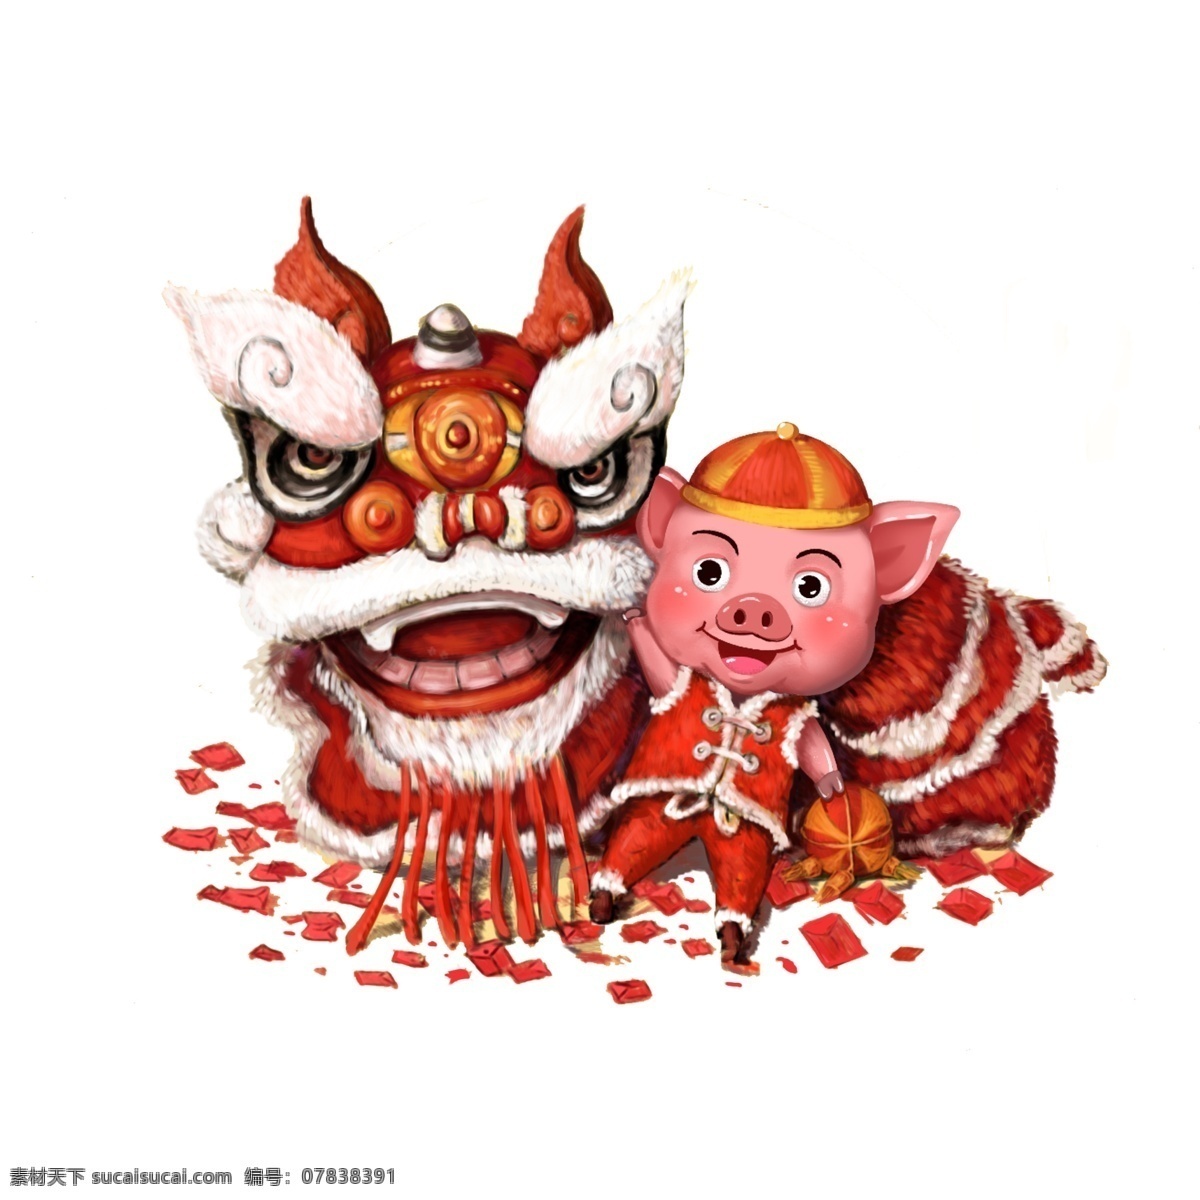 猪年 春节 喜庆 舞狮 图 舞狮图 立体 厚涂 插画风